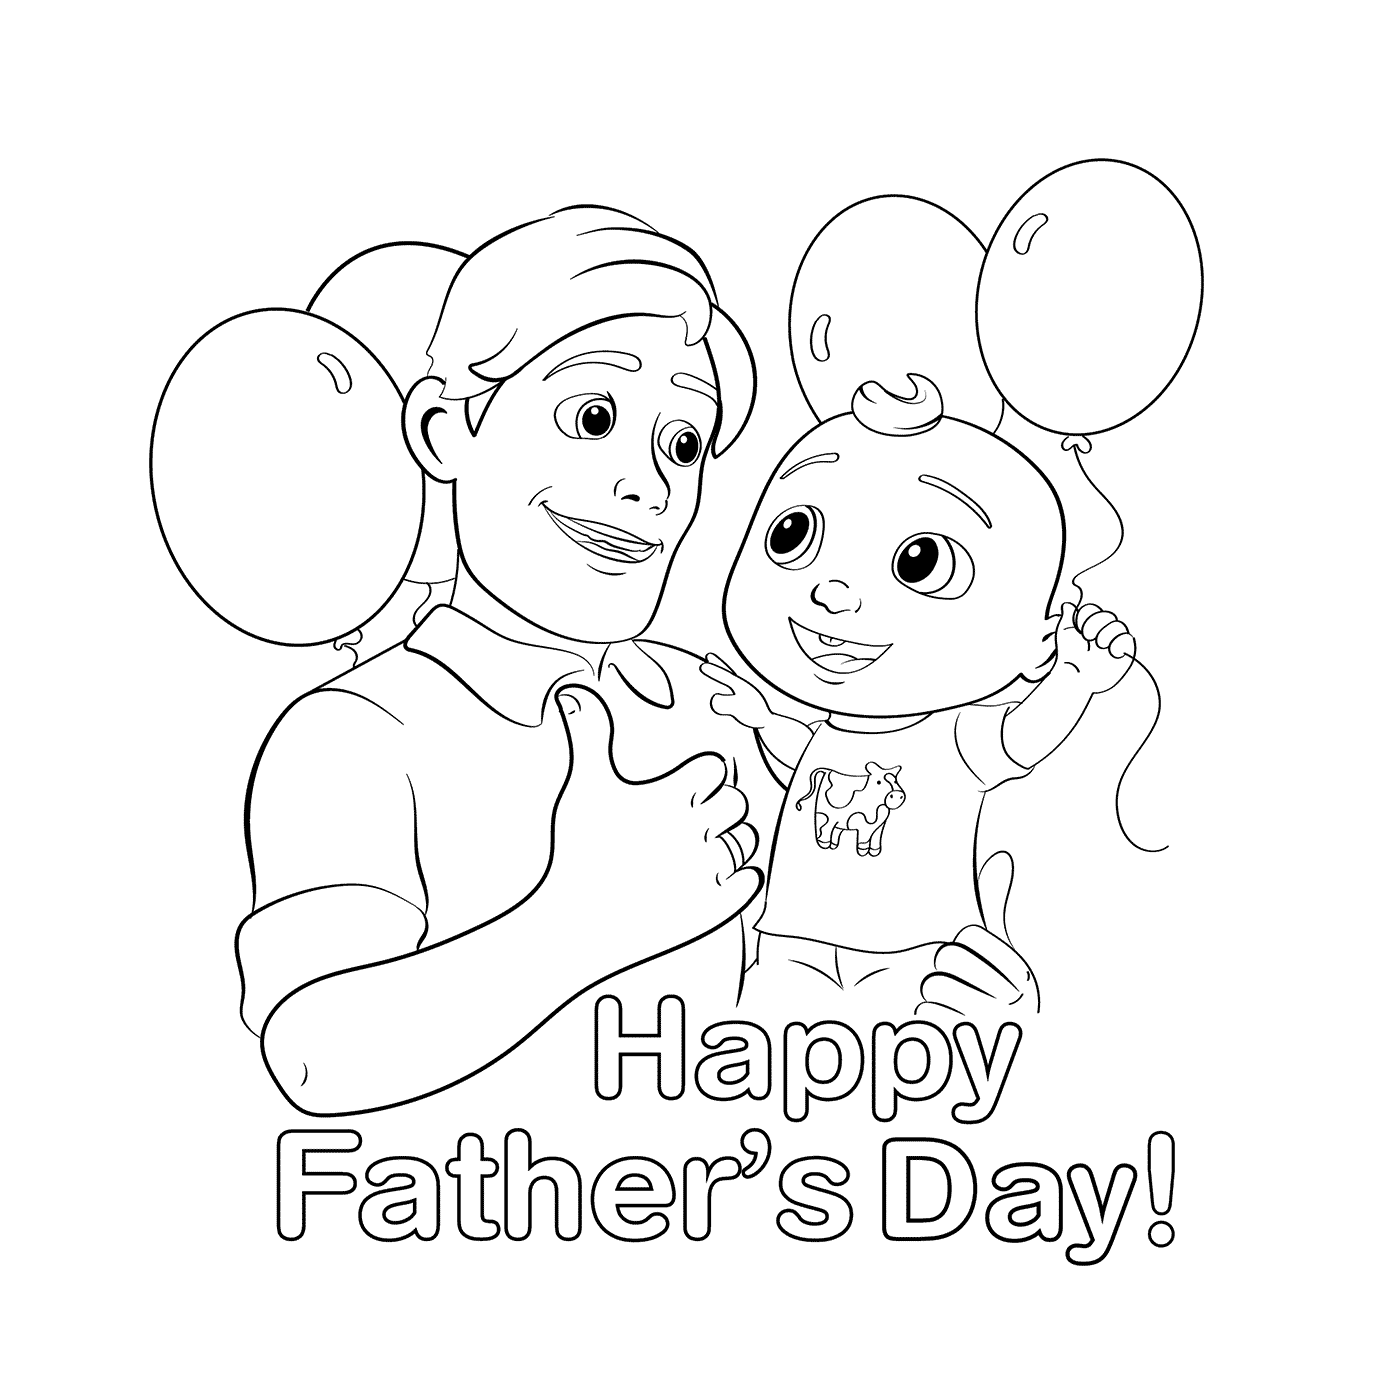  एक बच्चे के साथ पिता के दिन का उत्सव 